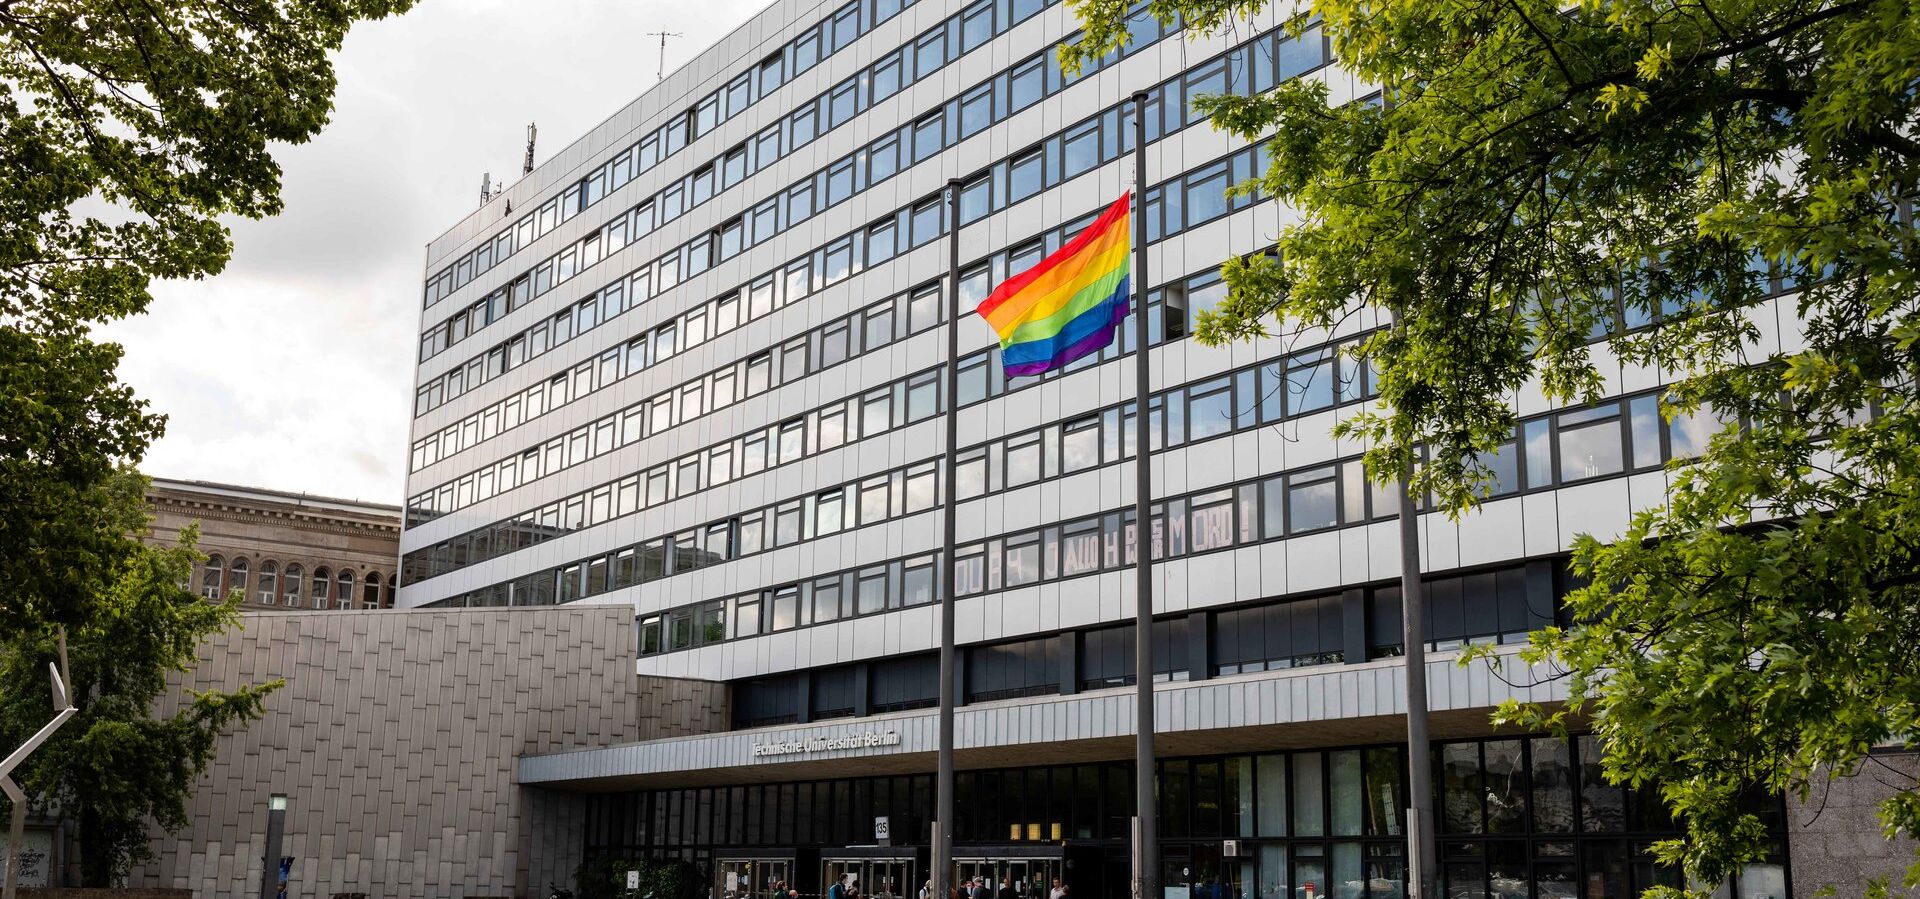 Platz vor dem Hauptgebäude der Technischen Universität Berlin mit gehisster Regenbogenfahne